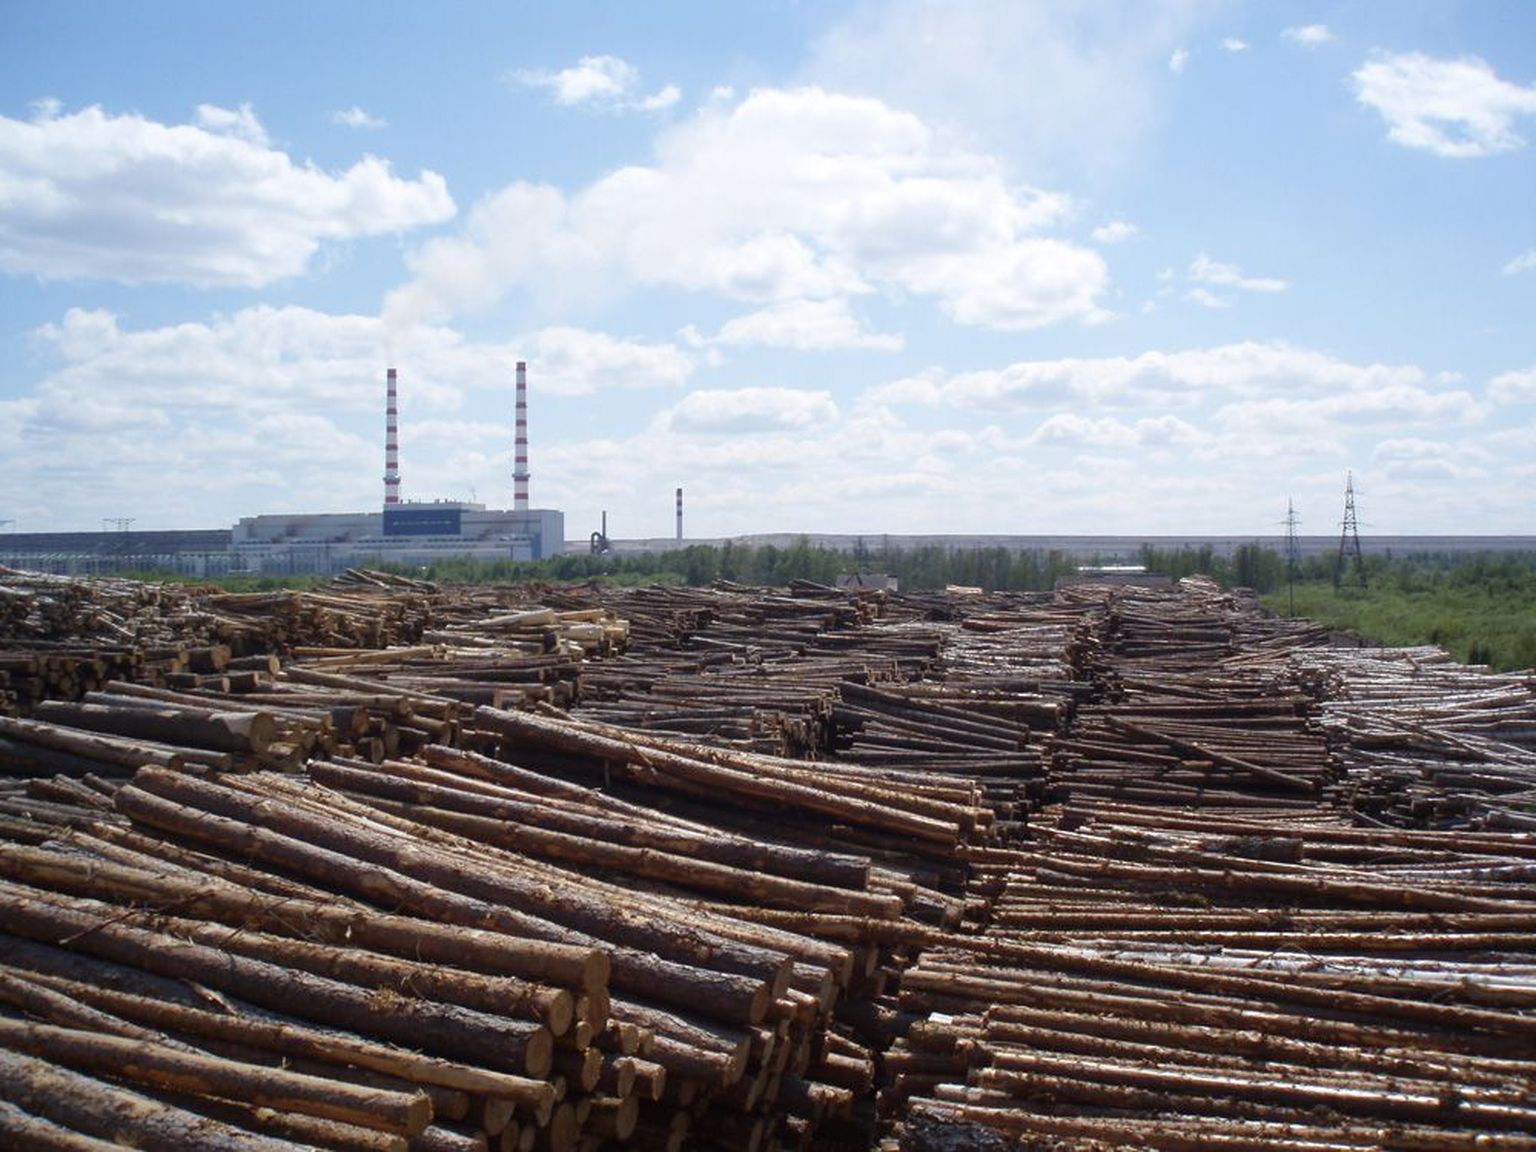 Fotole mahtunud männipalgikoormad Eesti Energia laoplatsil moodustavad vaid umbes kümnendiku sellest puidukogusest, mis aastas läheb Narva Elektrijaamade kateldesse.